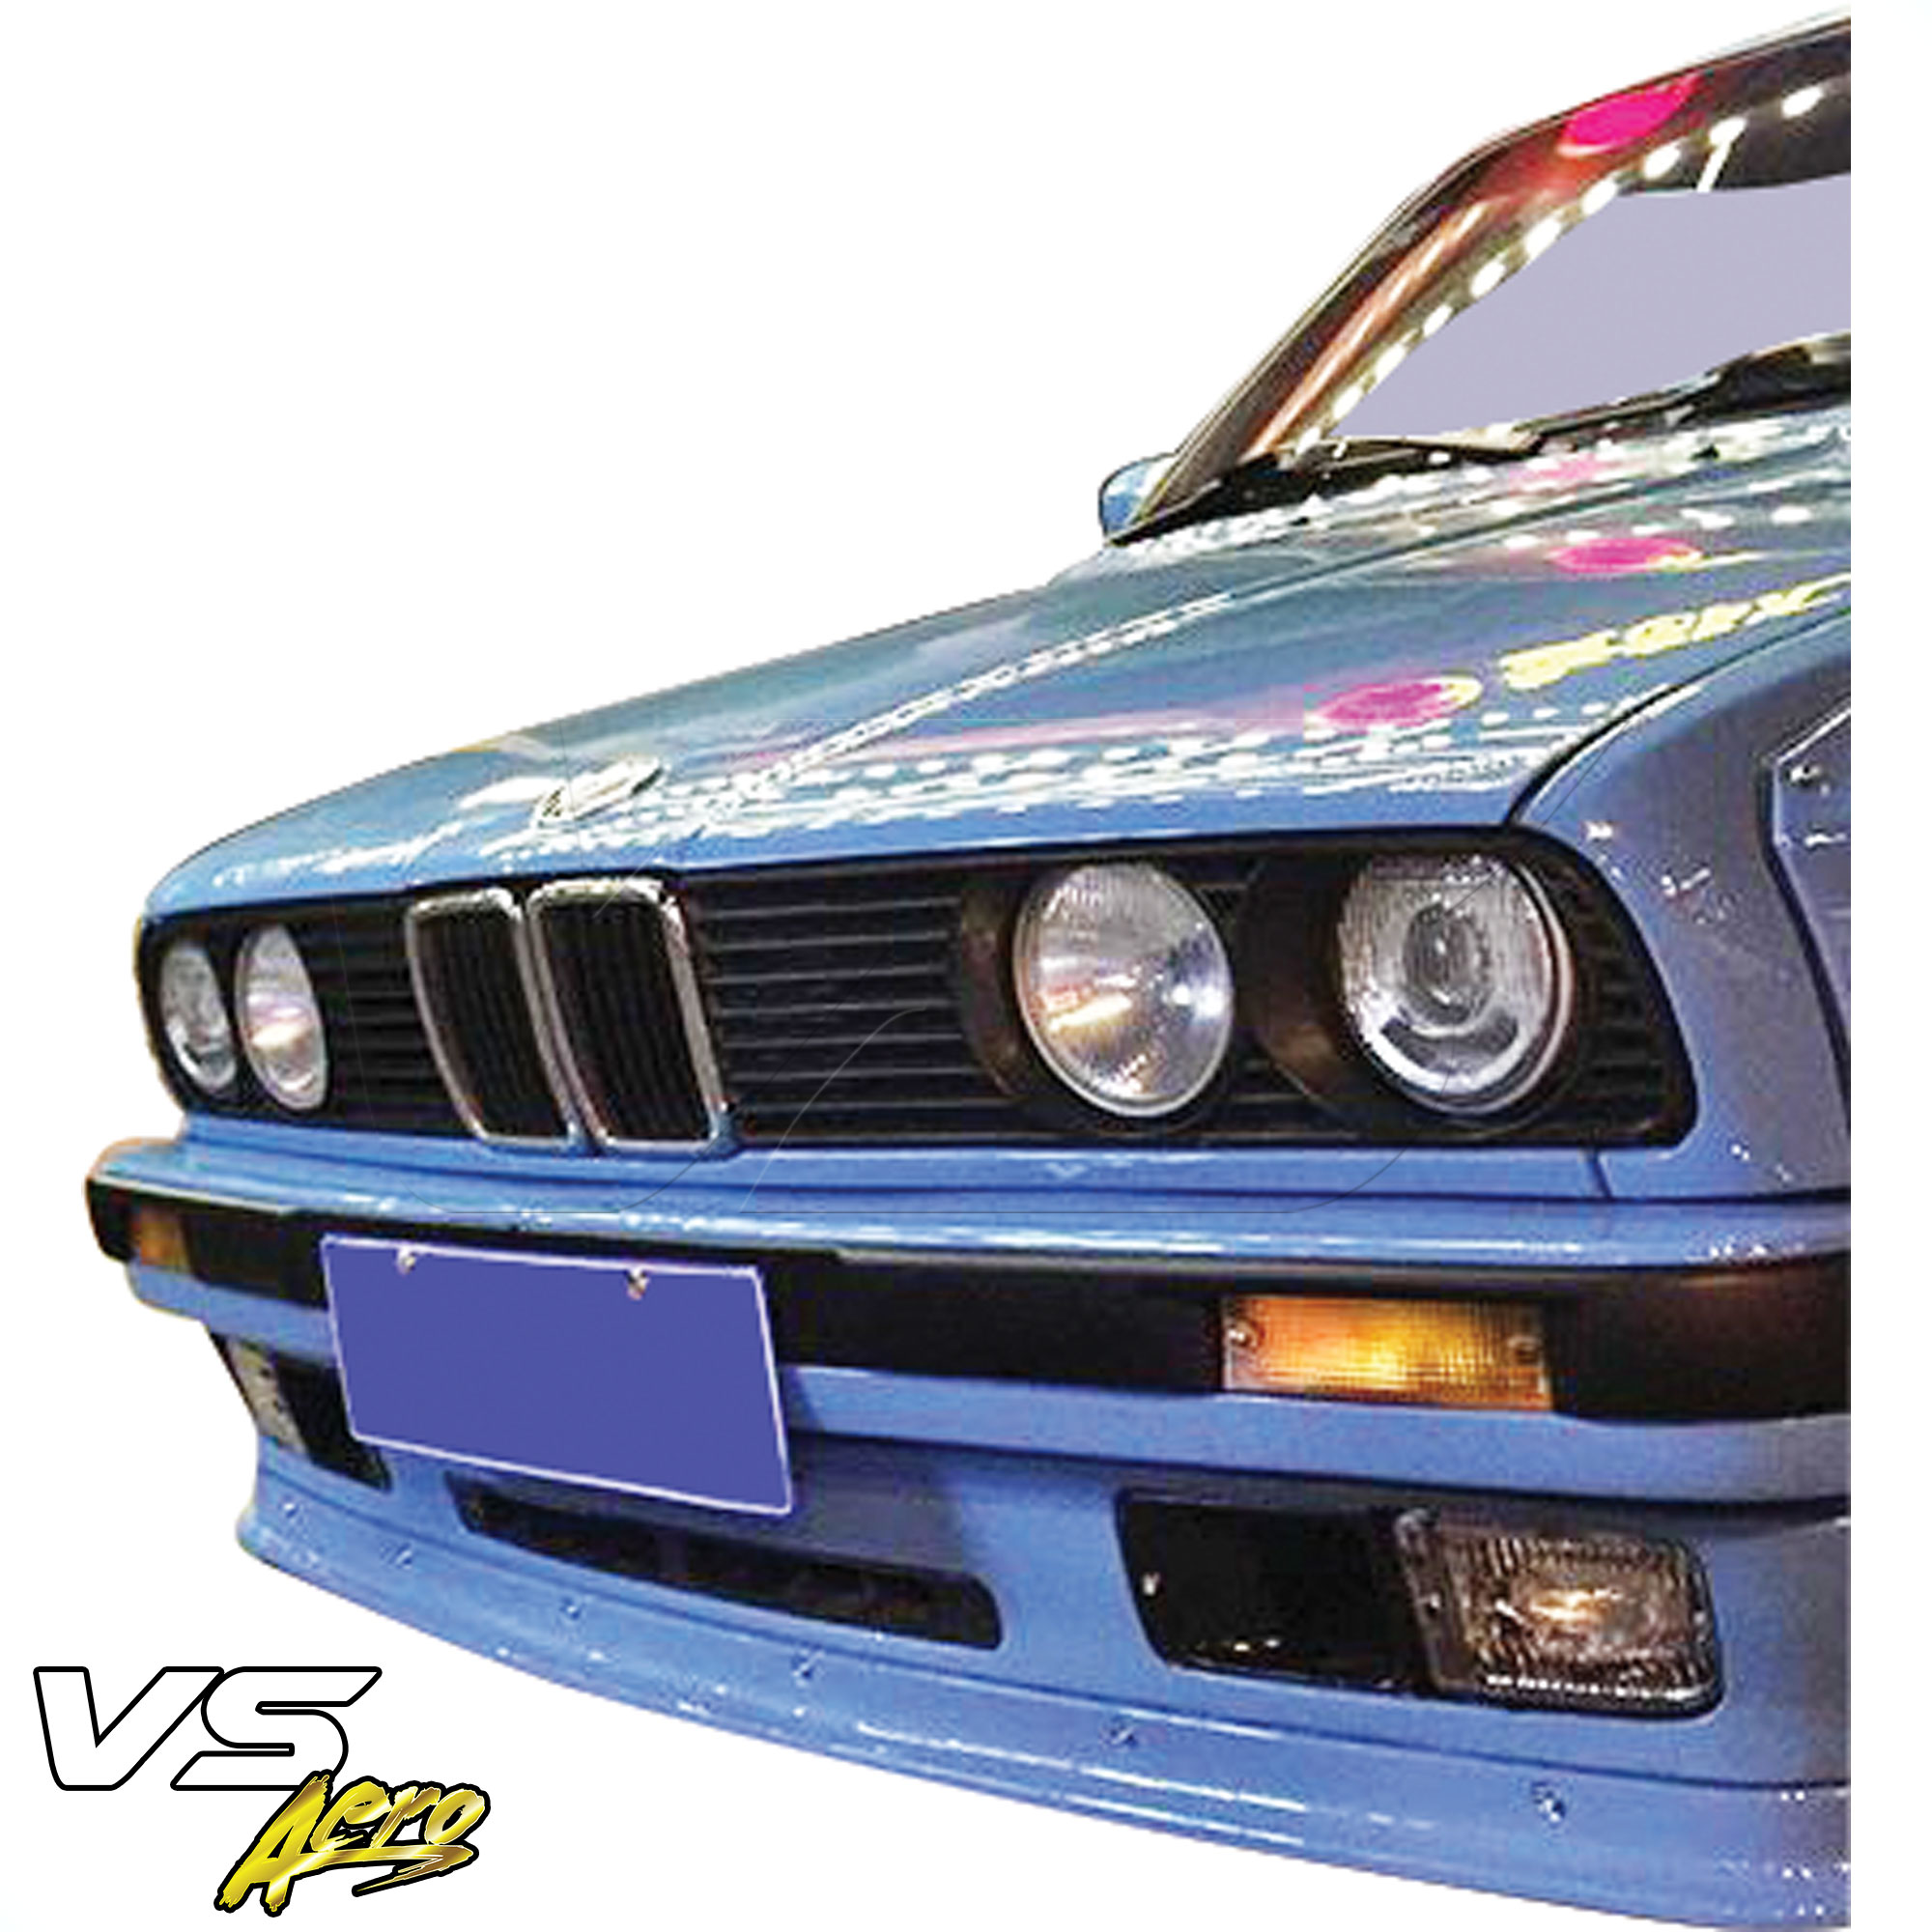 VSaero FRP TKYO Wide Body Front Lip > BMW 3-Series 318i 325i E30 1984-1991> 2dr Coupe - Image 6